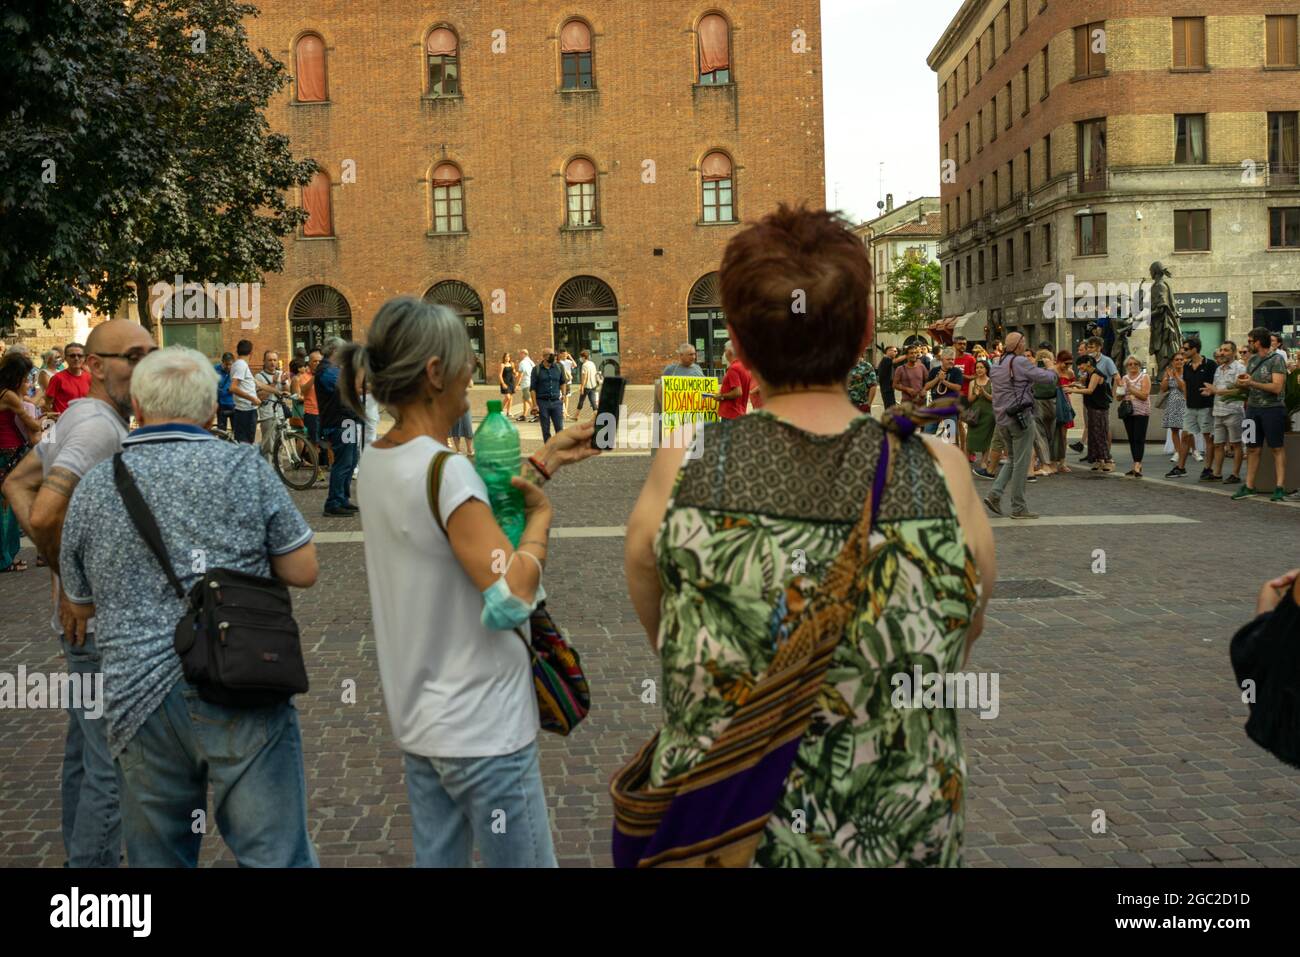 CREMONA, ITALIE - 24 juillet 2021 : une foule de personnes protestant contre la vaccination Covid-19 à Cremona, Italie Banque D'Images